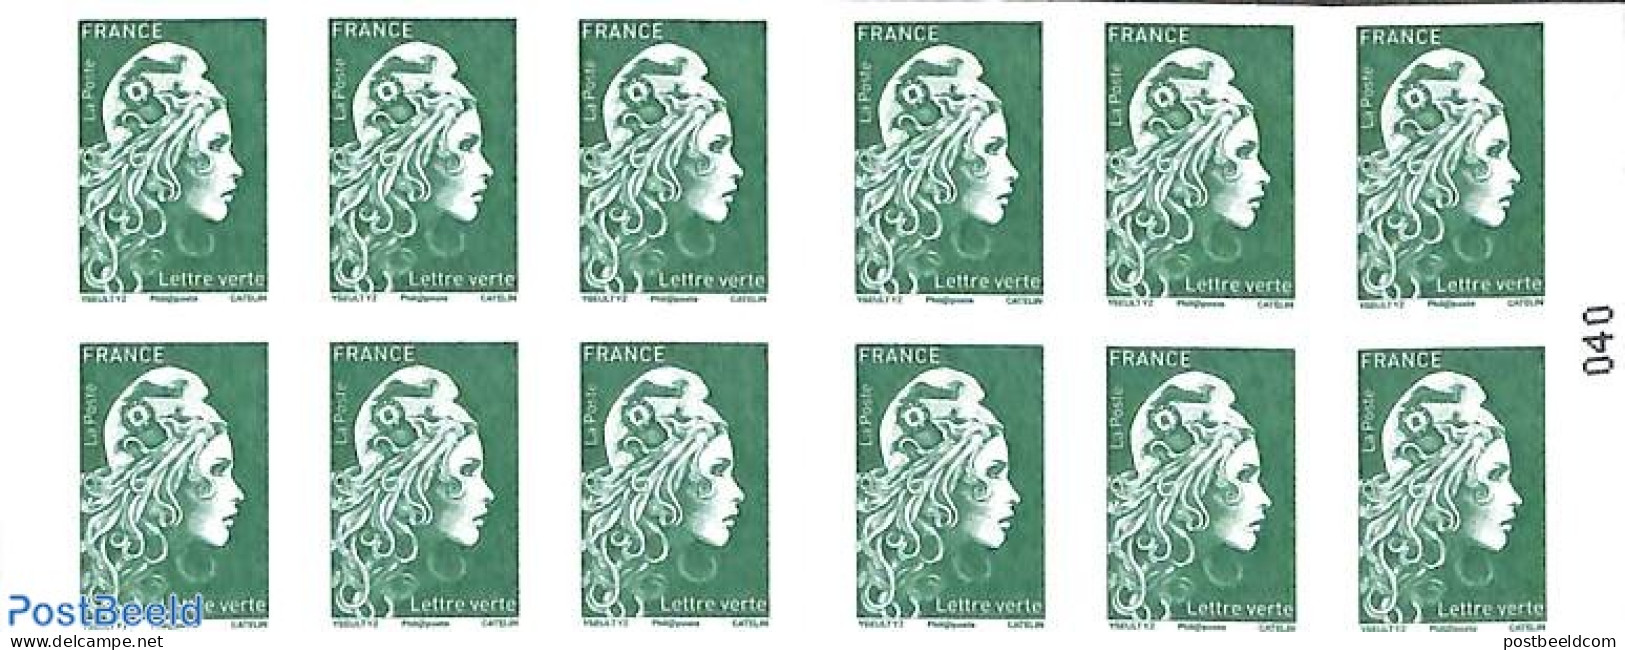 France 2018 Definitives Booklet, Mint NH, Stamp Booklets - Ongebruikt